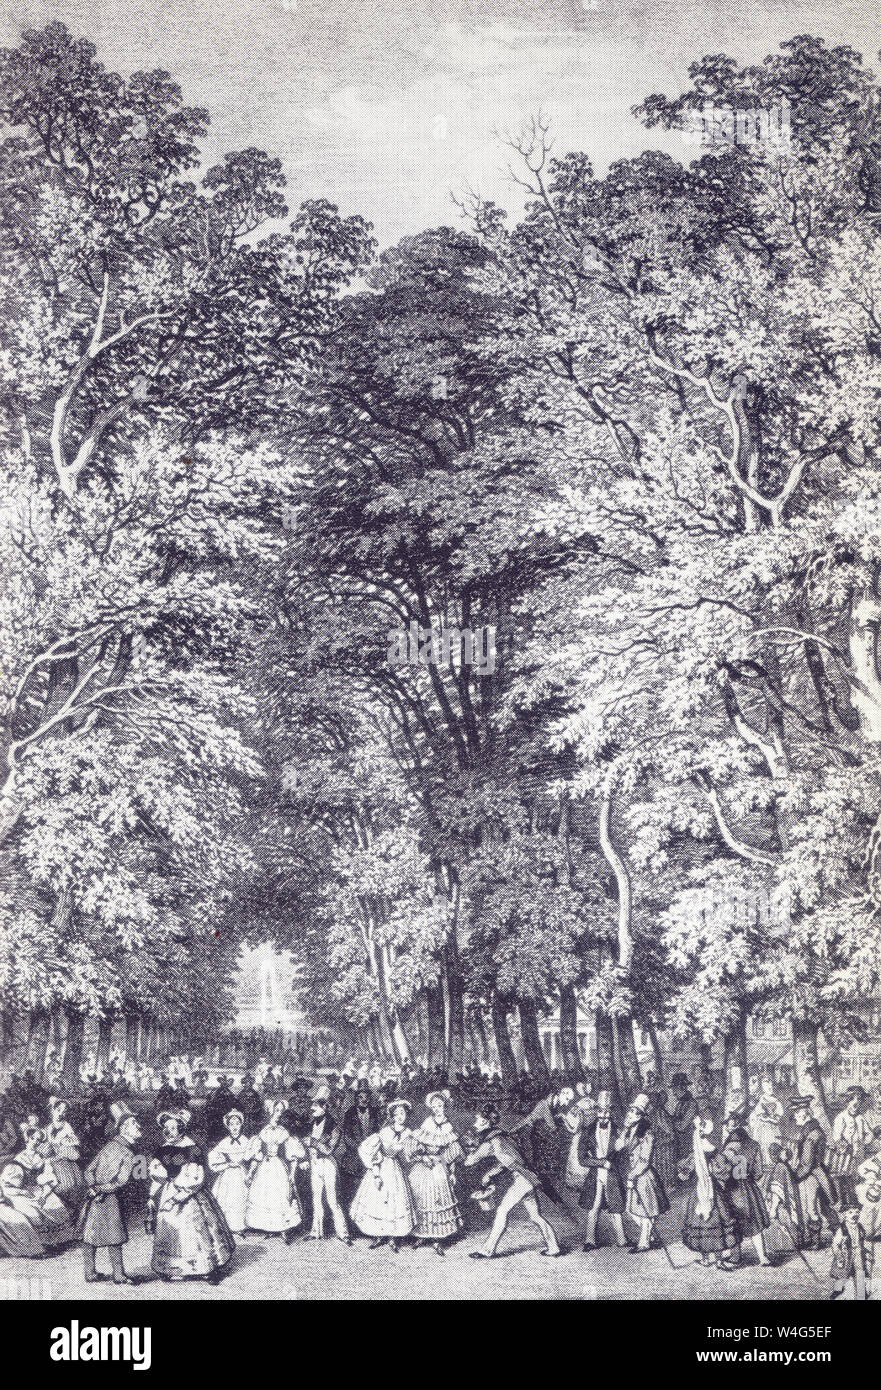 Die grosse Allee in Bad Pyrmont, Deutschland. Lithographie von G. Osterwald 1850 Stockfoto